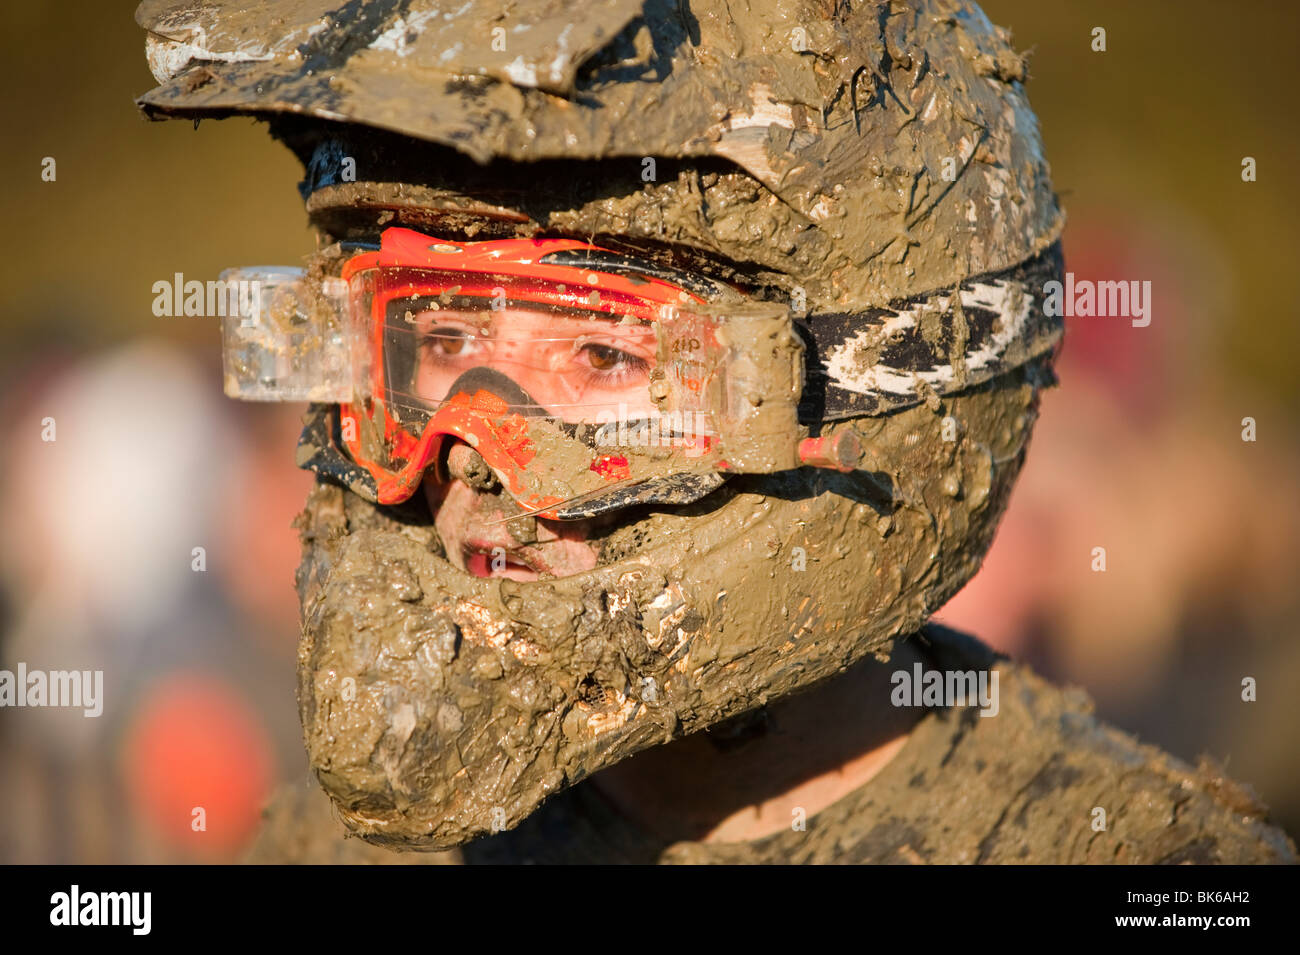 Motorbike rider covered in mud Stock Photo